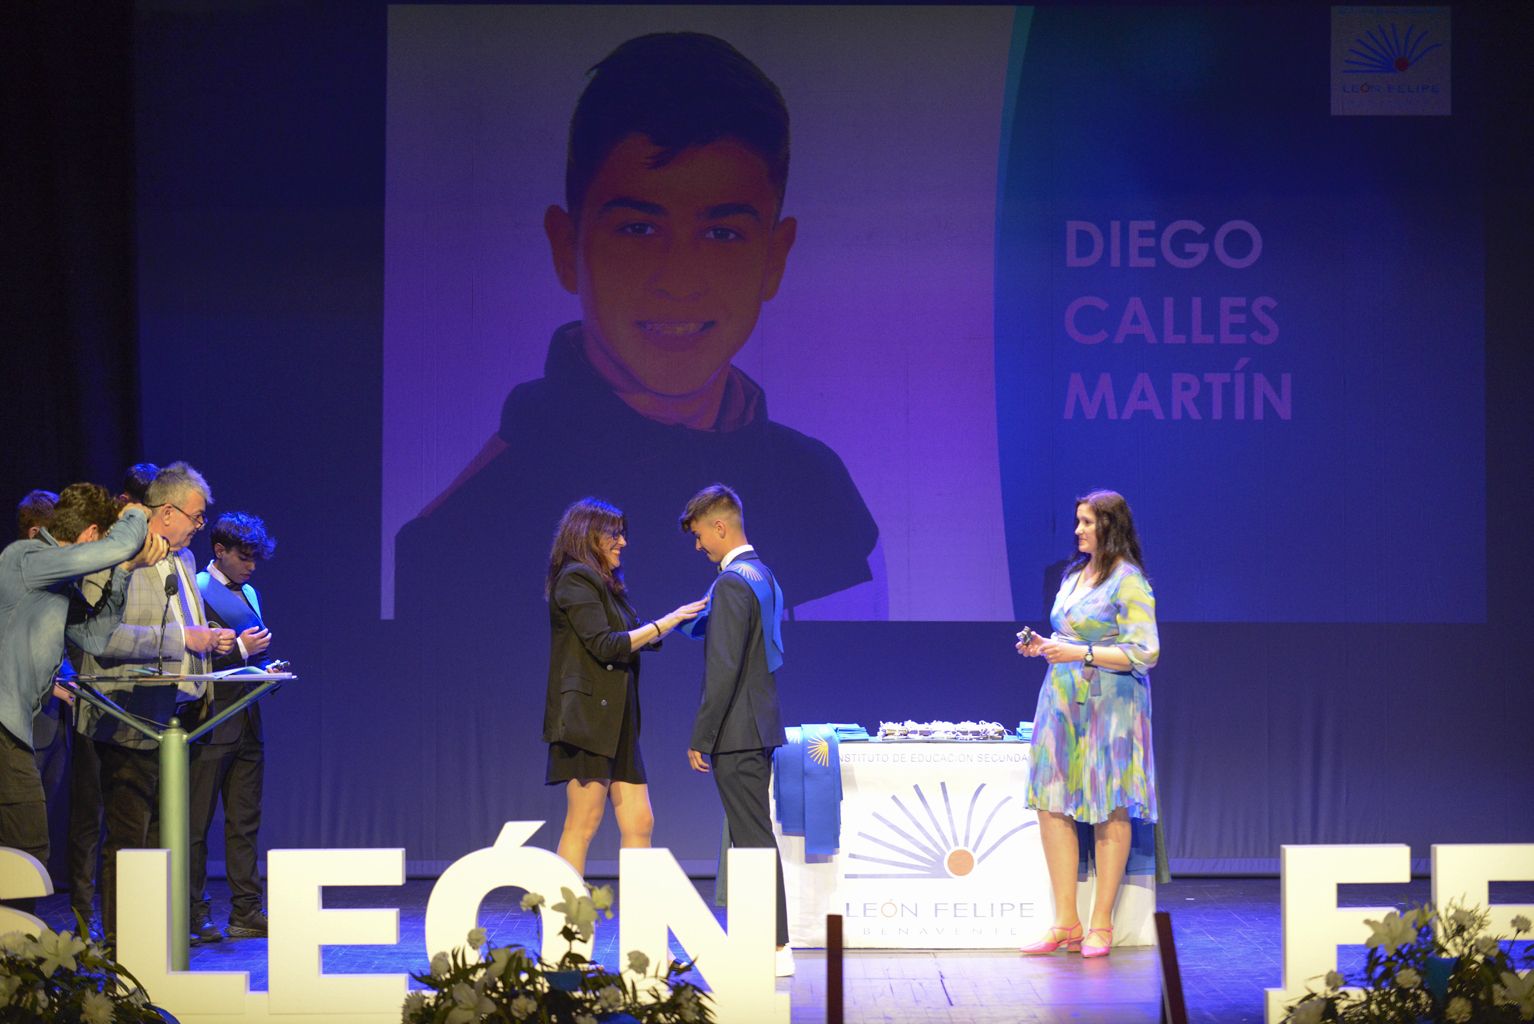 Graduación de bachilleres y alumnos de FP y Ciclos Formativos del IES León Felipe